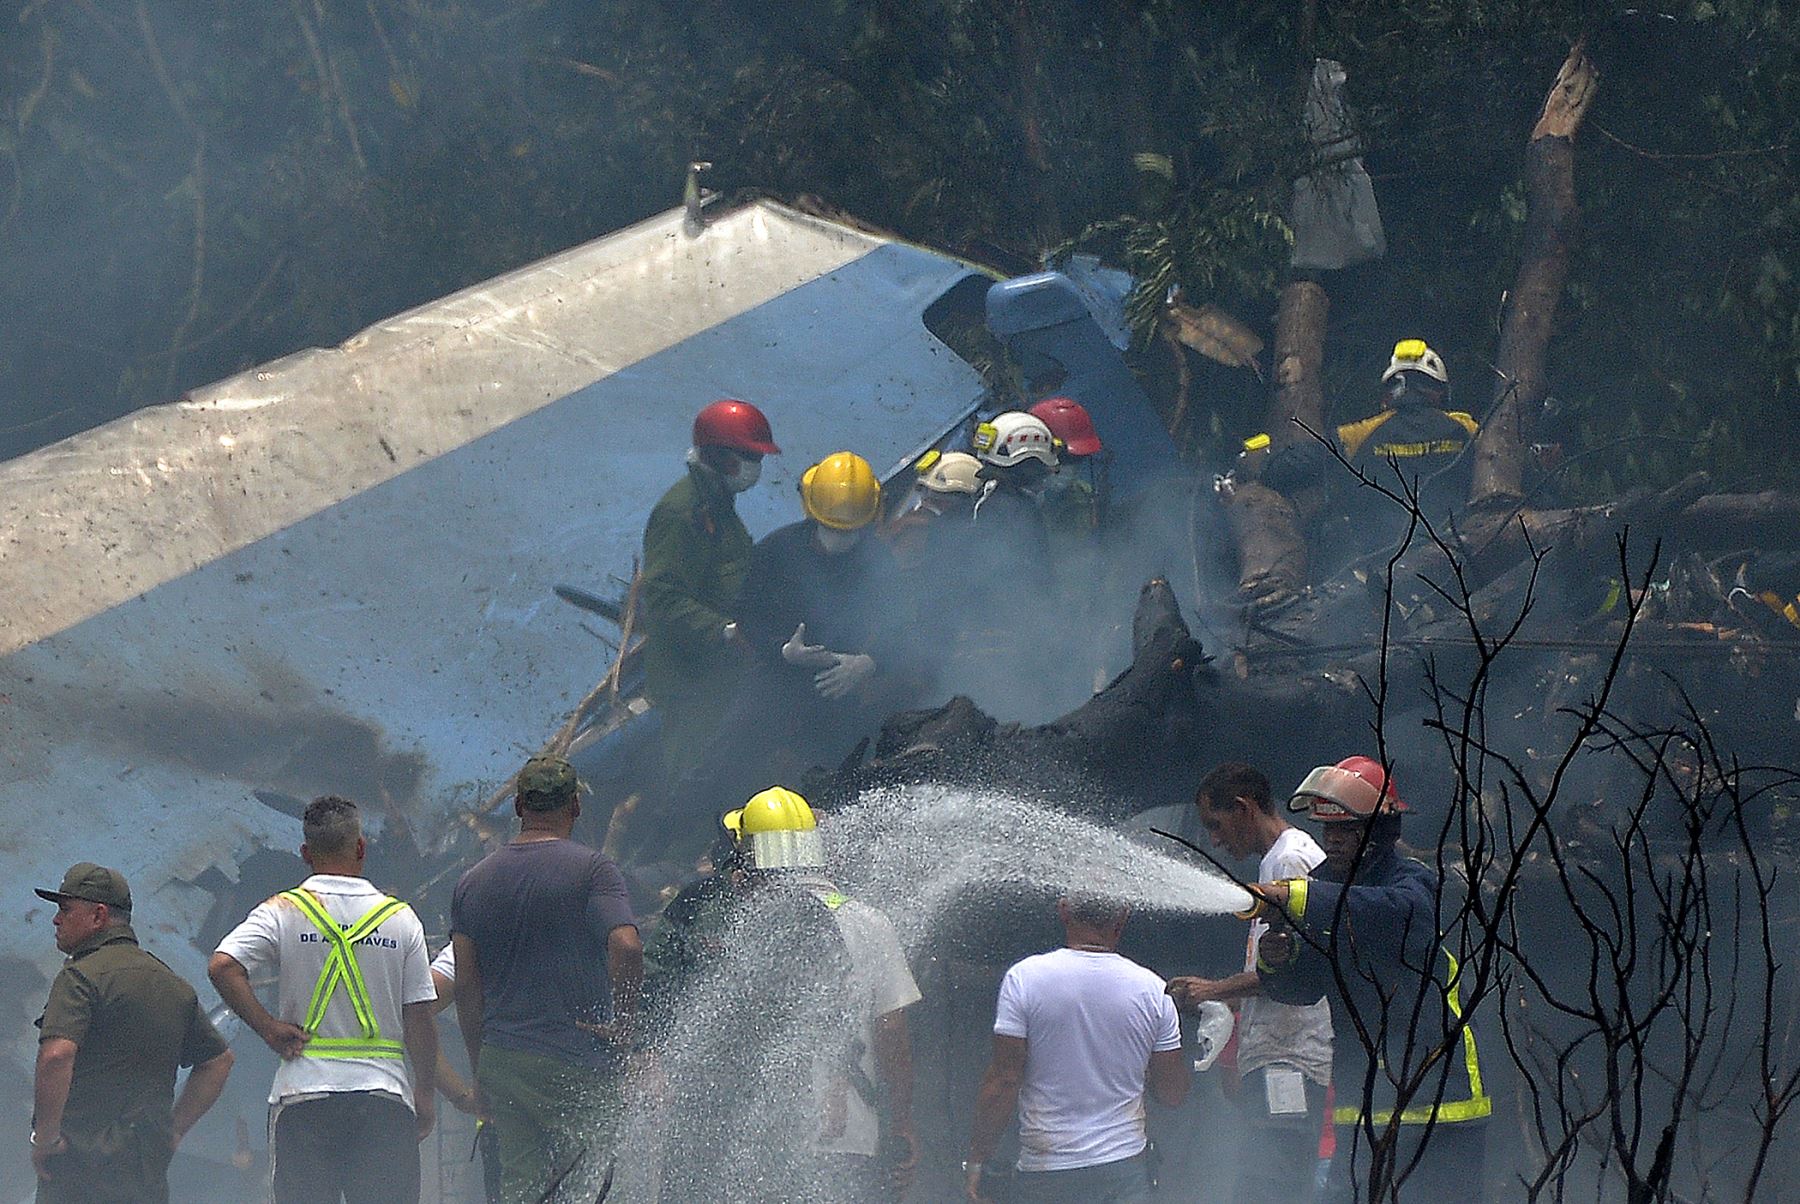 Un avión Boeing 737 de la aerolínea Cubana de Aviación con 110 pasajeros a bordo,se estrelló un poco después de haber despegado de La Habana, Cuba.Foto: AFP